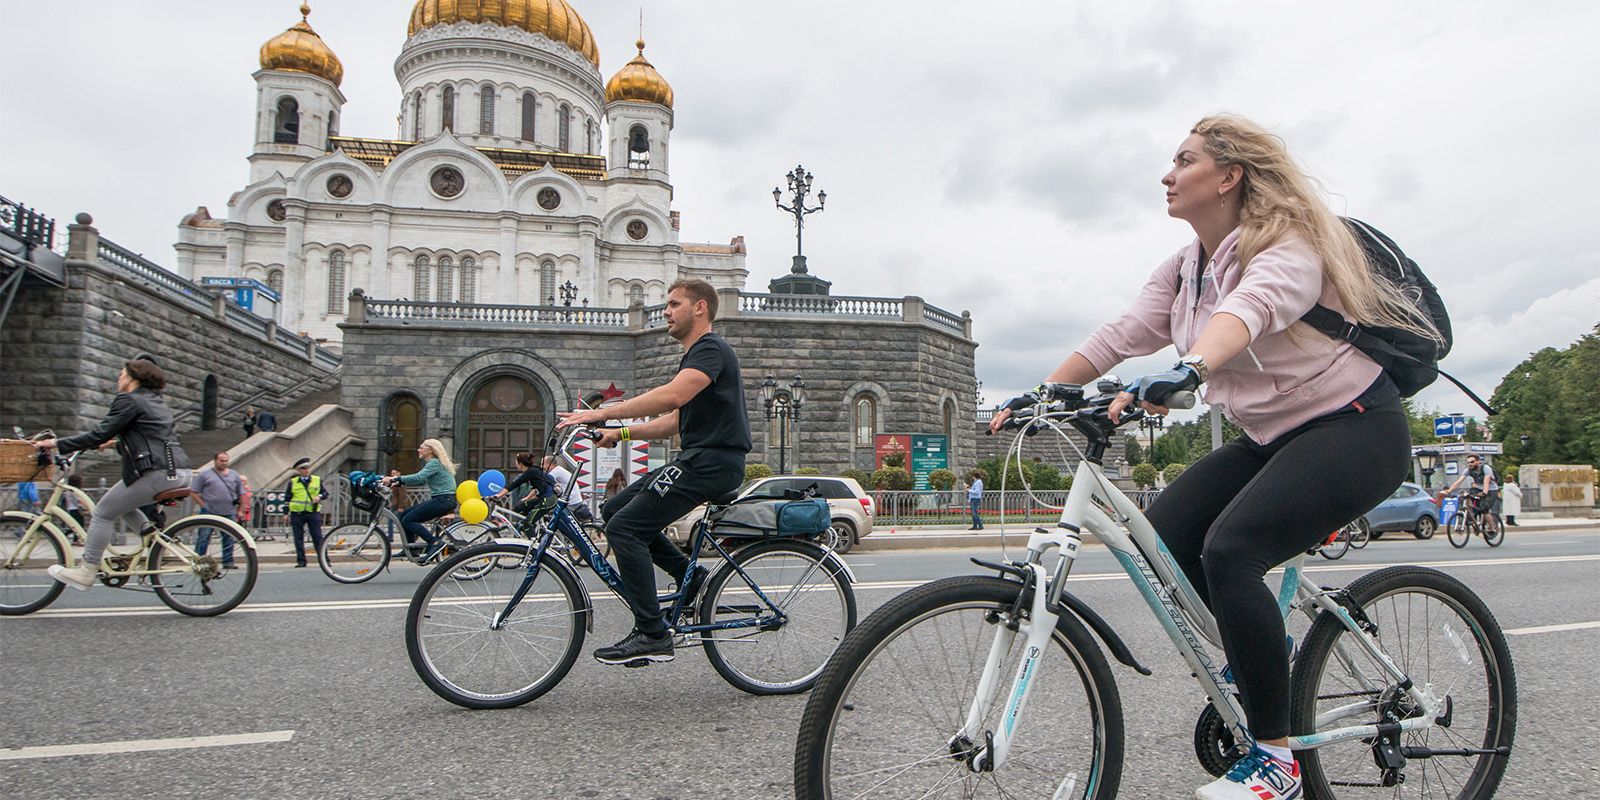 Схему движения изменят в центре Москвы во время велофестиваля. Фото: официальный сайт мэра Москвы